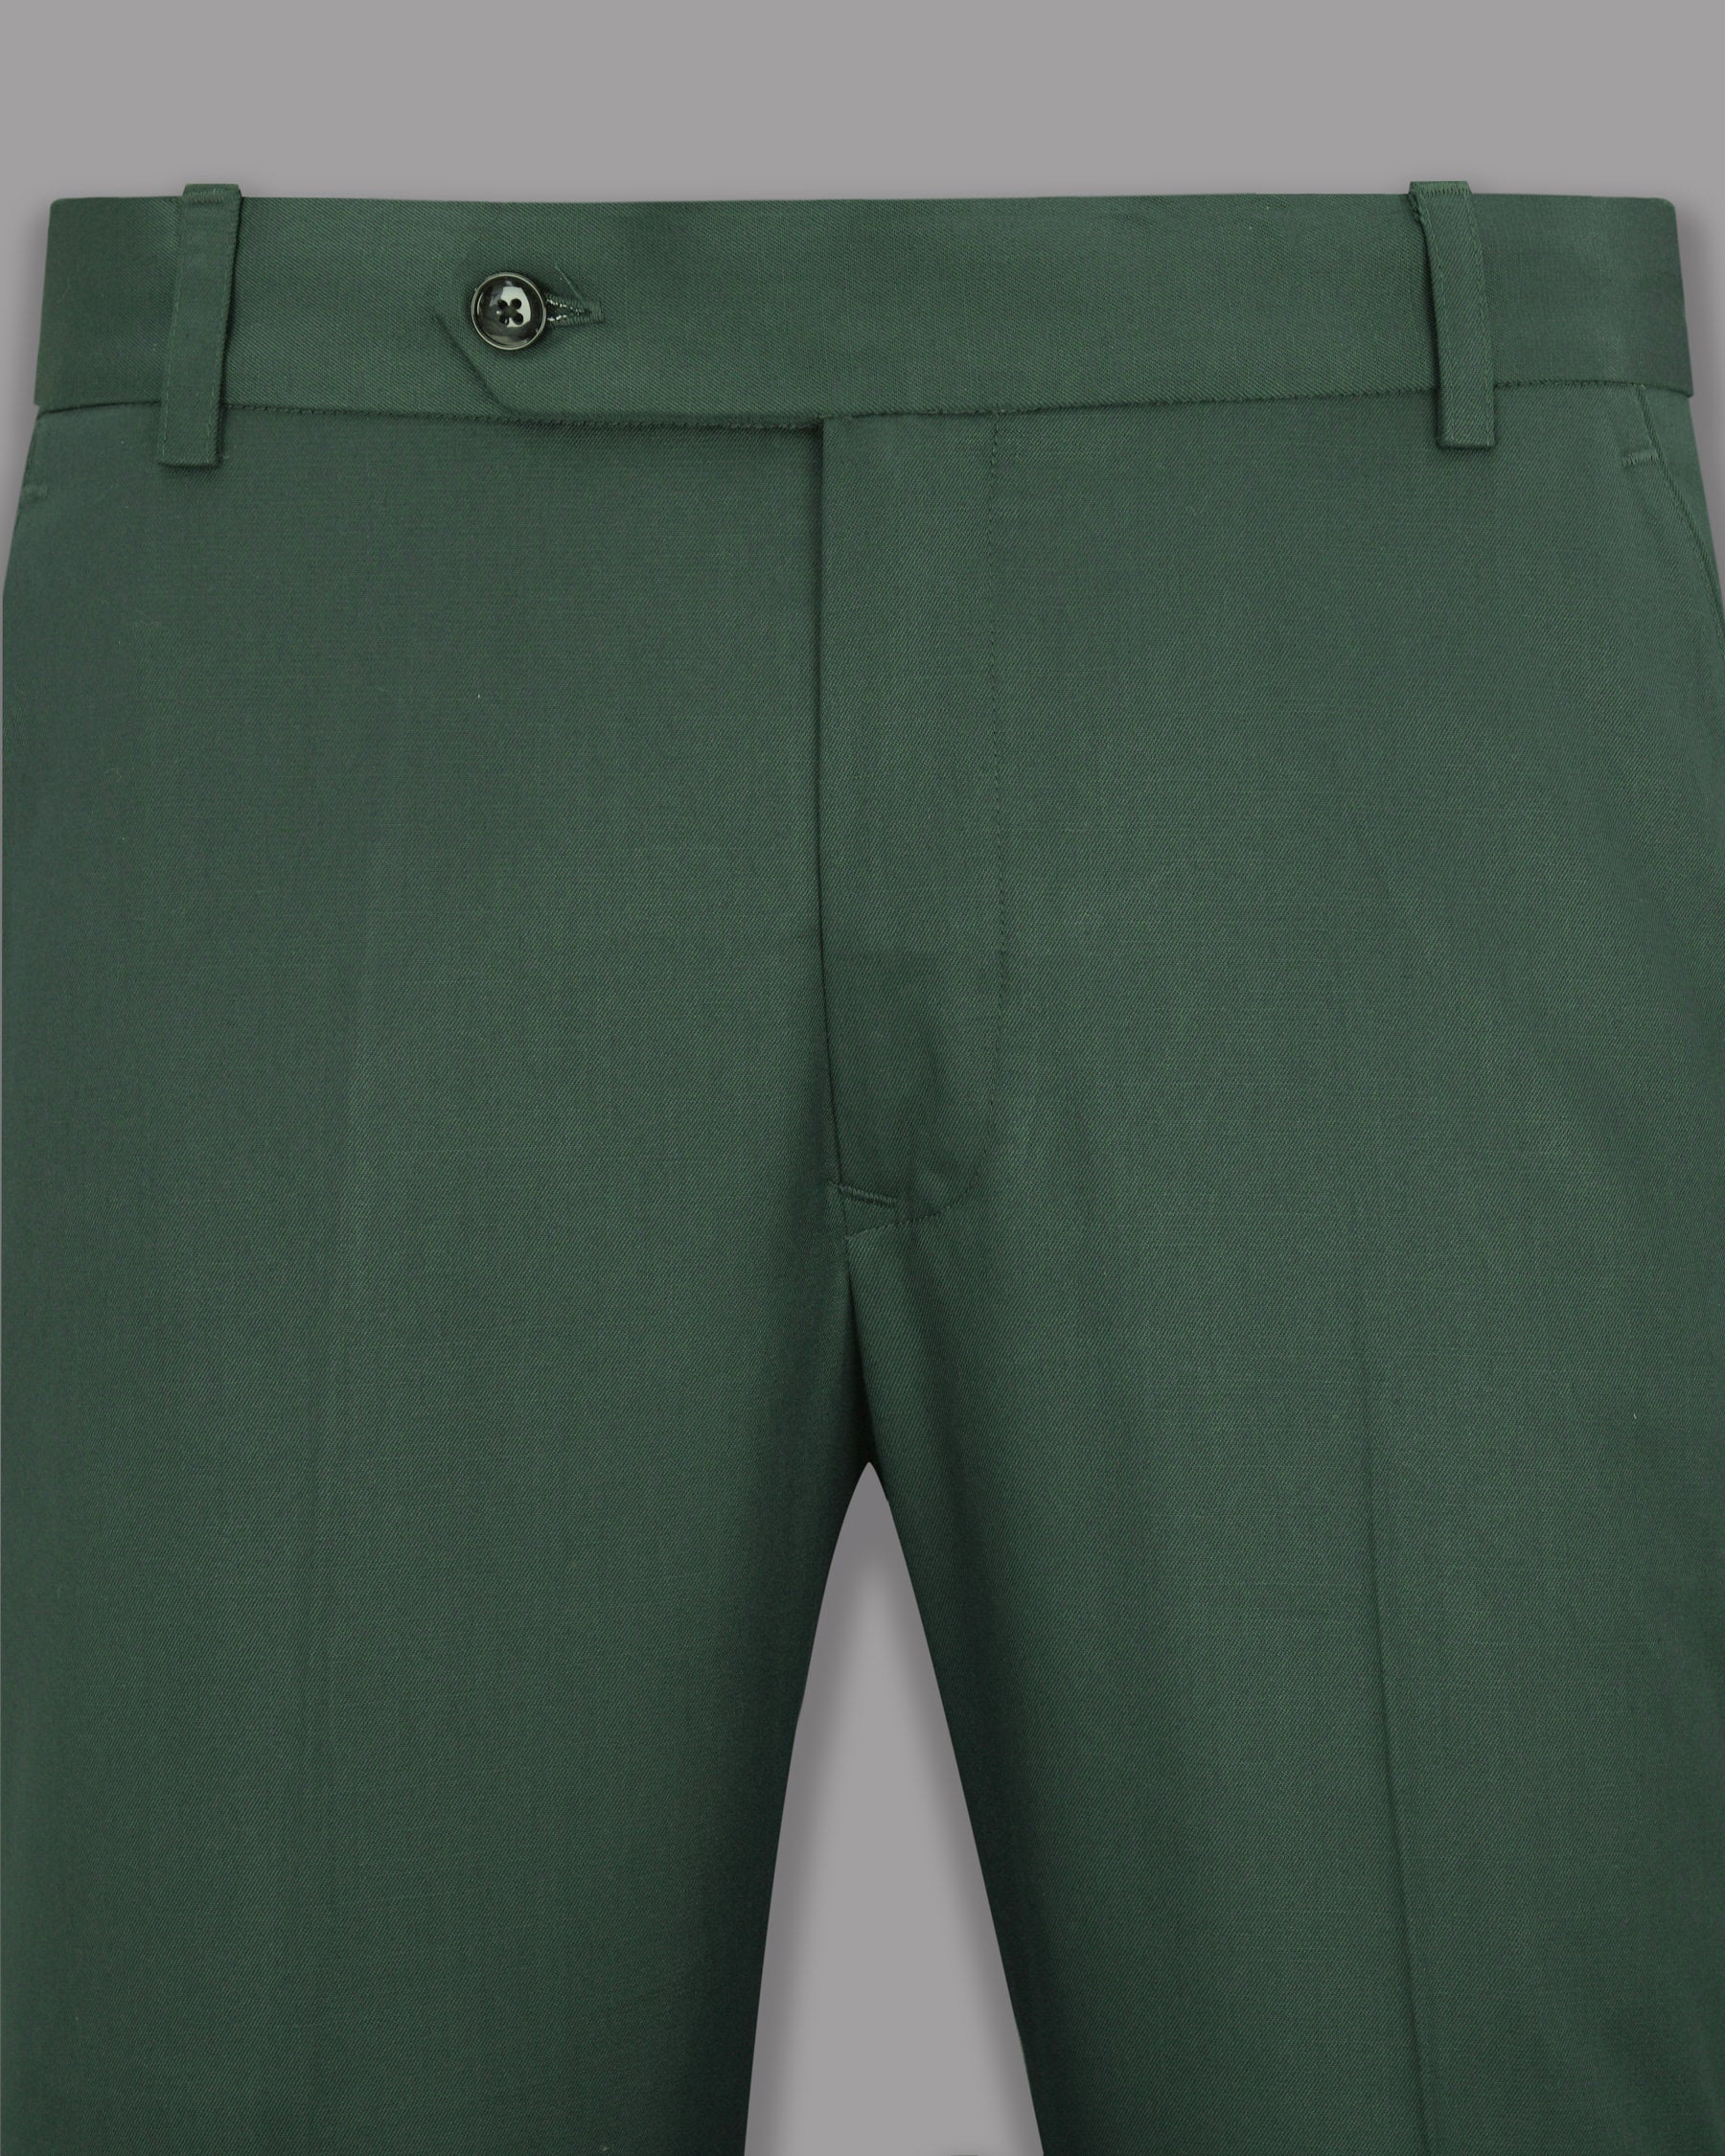 Outer Space Green Wool Rich Pant T1139-28, T1139-32, T1139-36, T1139-38, T1139-42, T1139-44, T1139-34, T1139-30, T1139-40